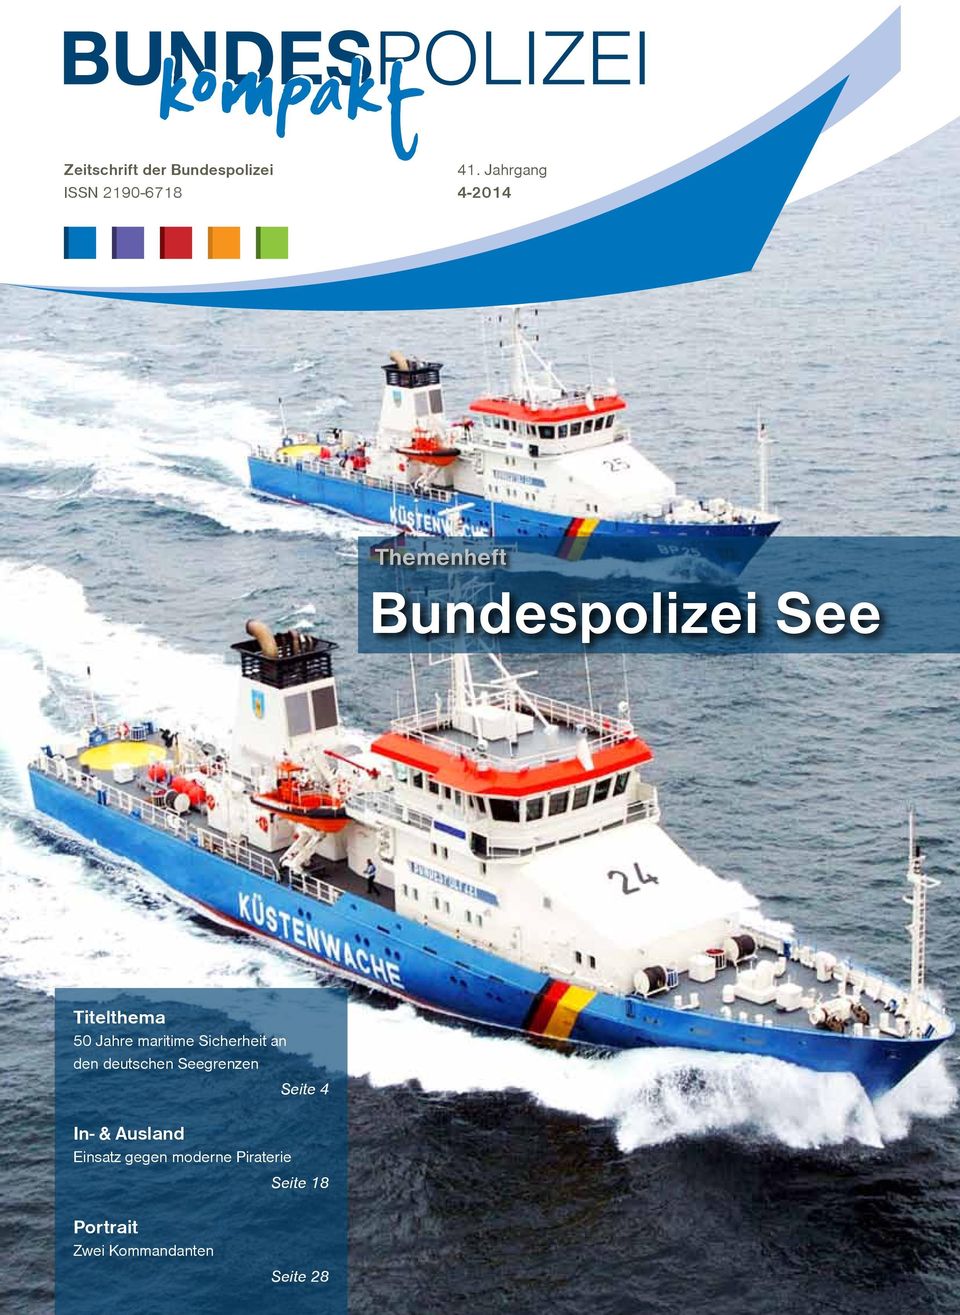 maritime Sicherheit an den deutschen Seegrenzen In- & Ausland